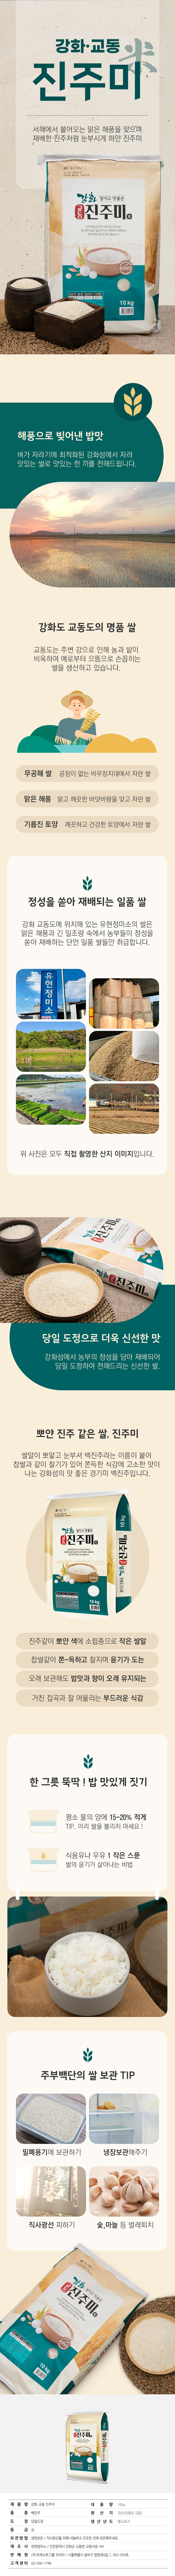 2022_ganghwa_white_jinjoo_rice_10kg.jpg